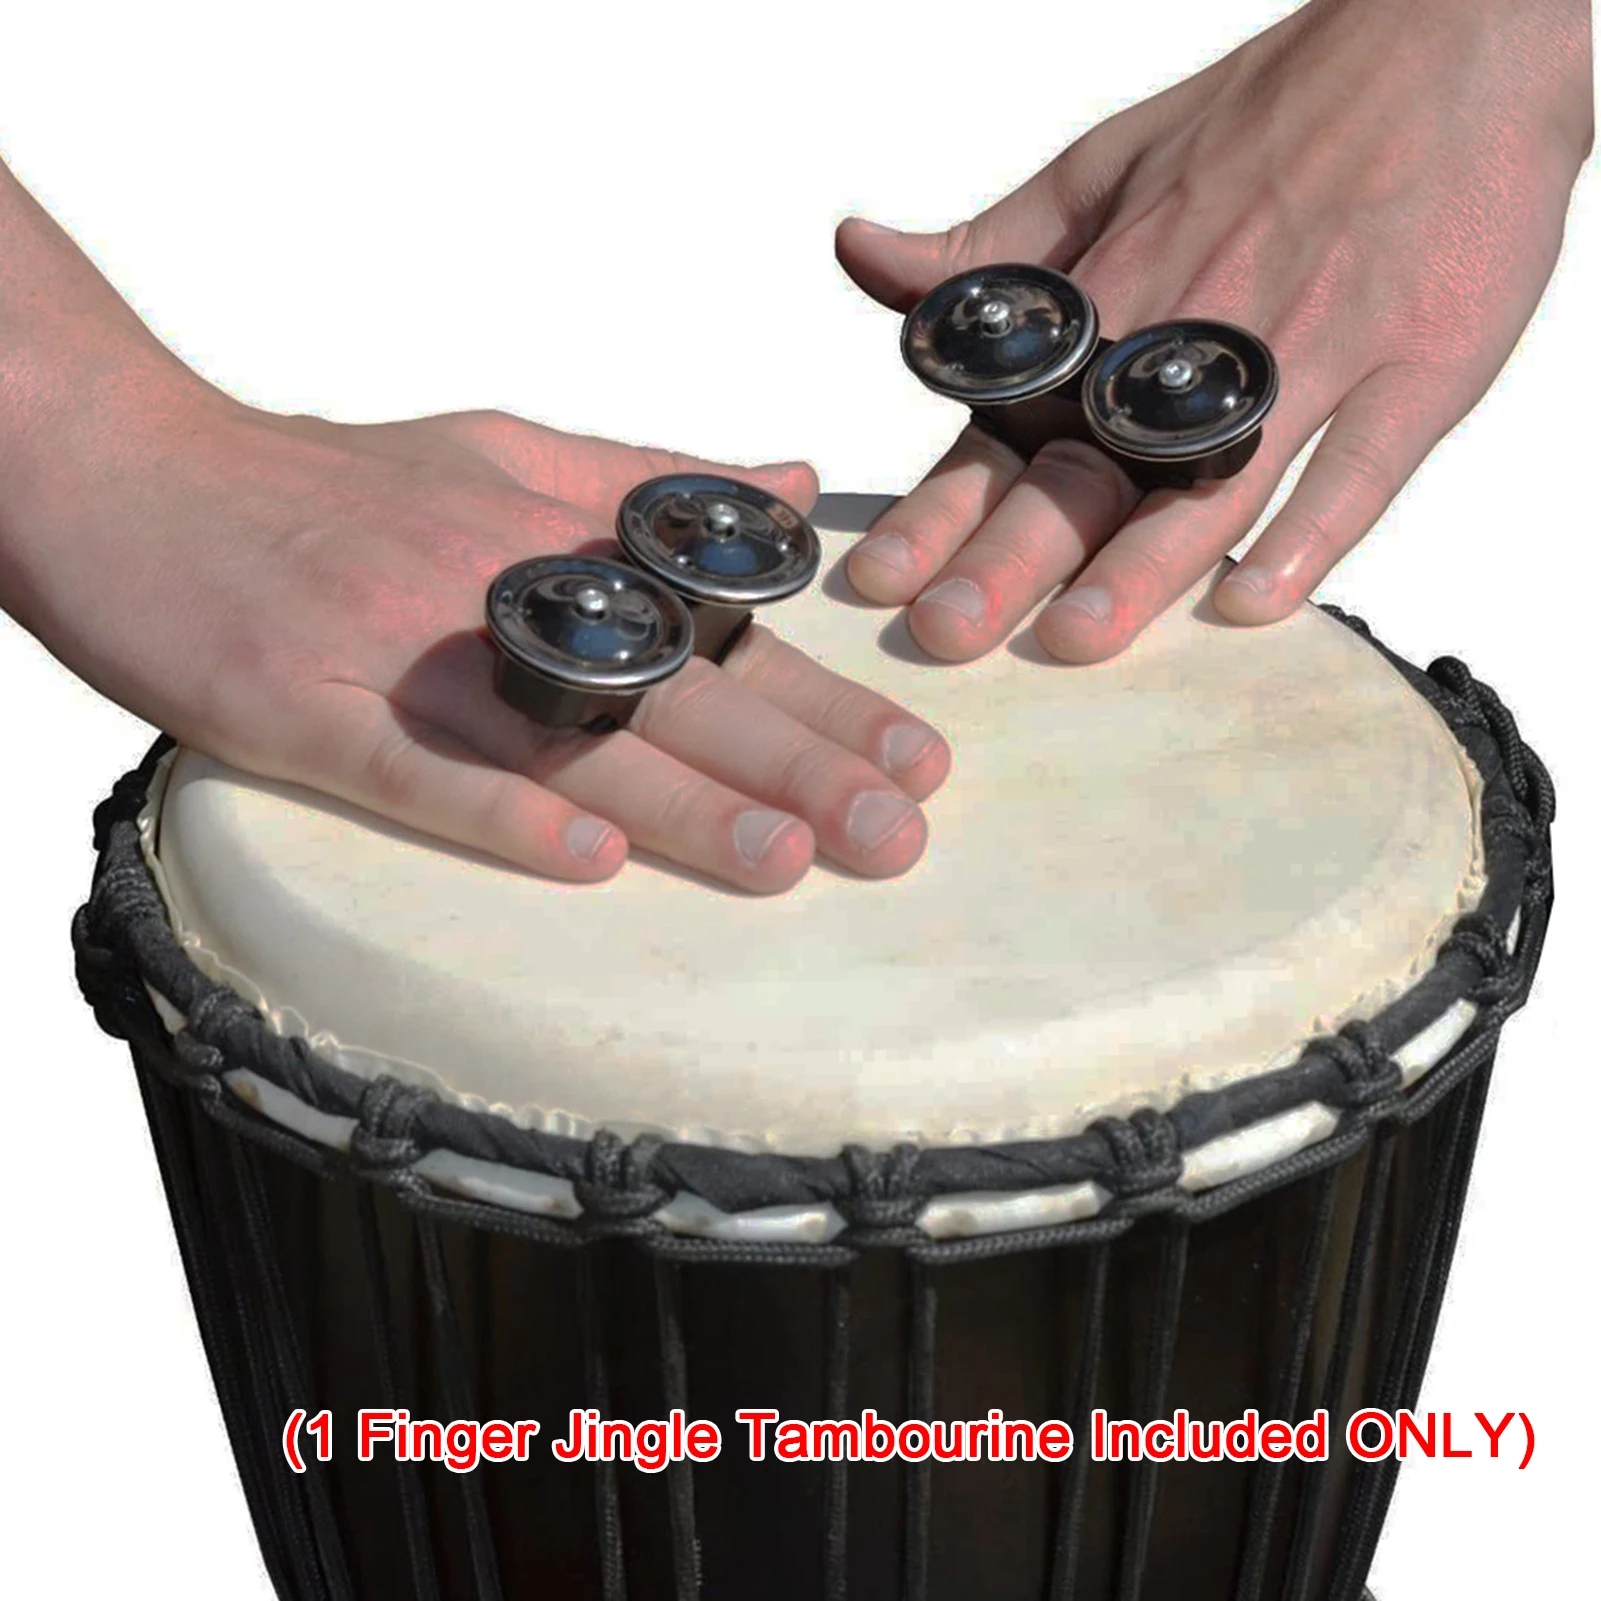 

Finger Jingle бубен металлический колокольчик африканские Ударные музыкальные инструменты ручной Колокольчик для Cajons Bongos Djembes Congas